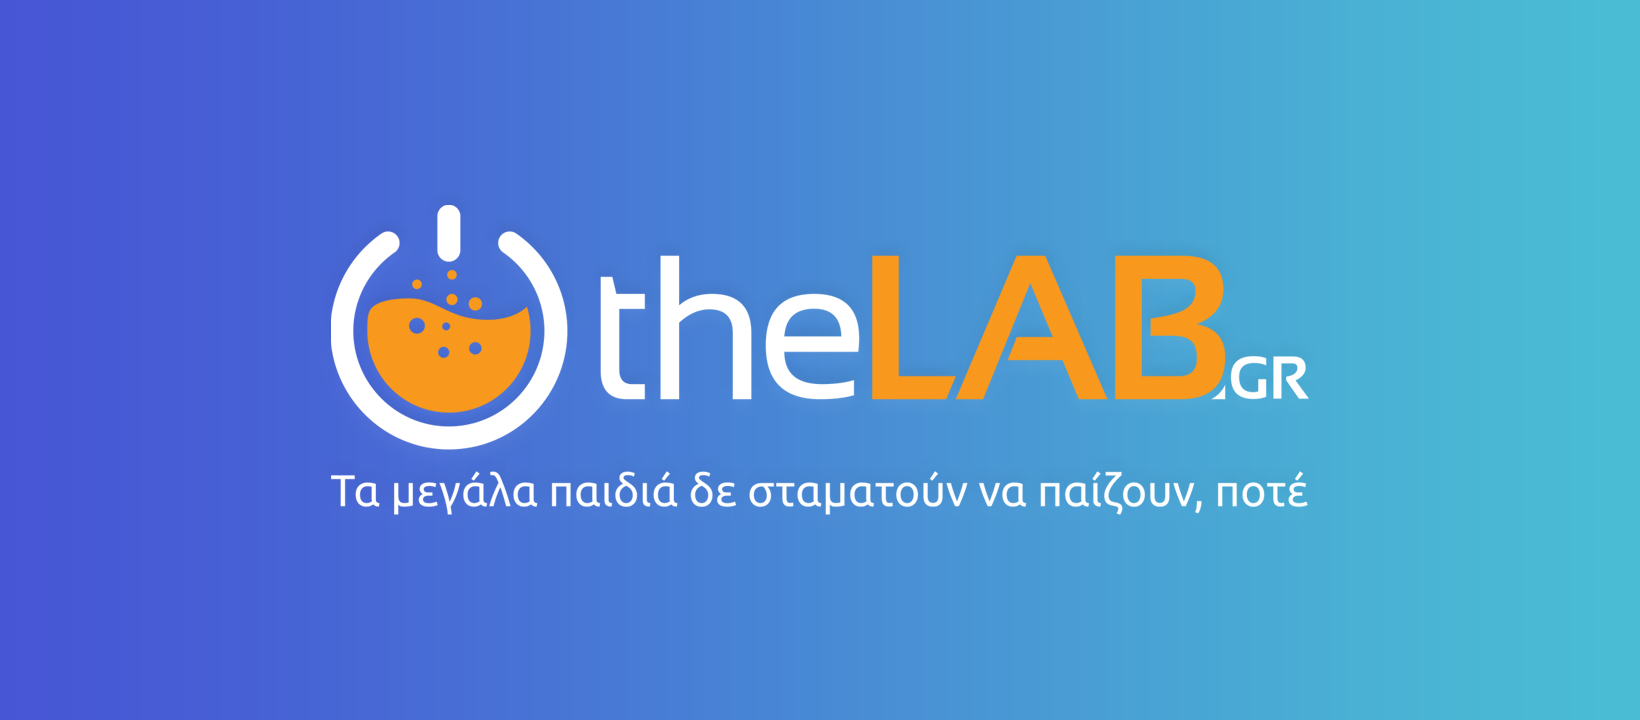 www.thelab.gr